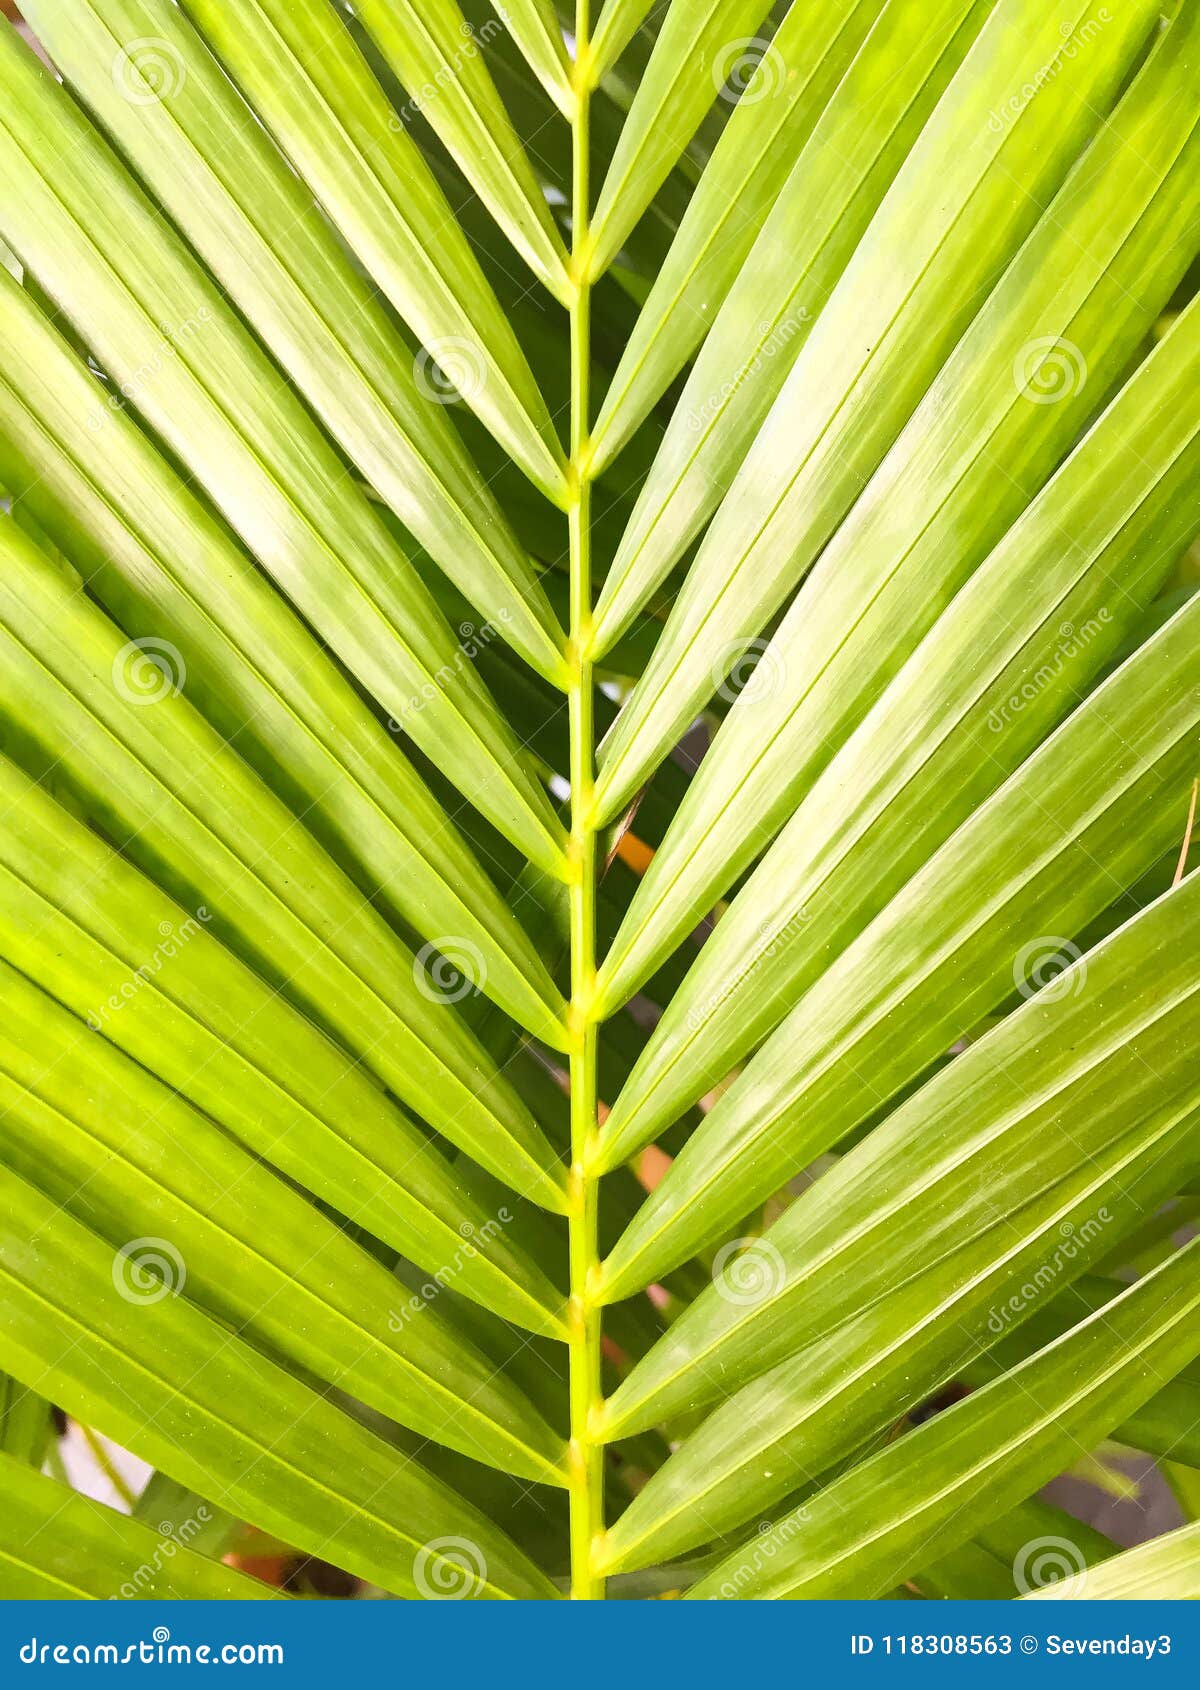 la palmera rey. ** elegante elfenbeinfarbener raíz y jugosa hojas verdes